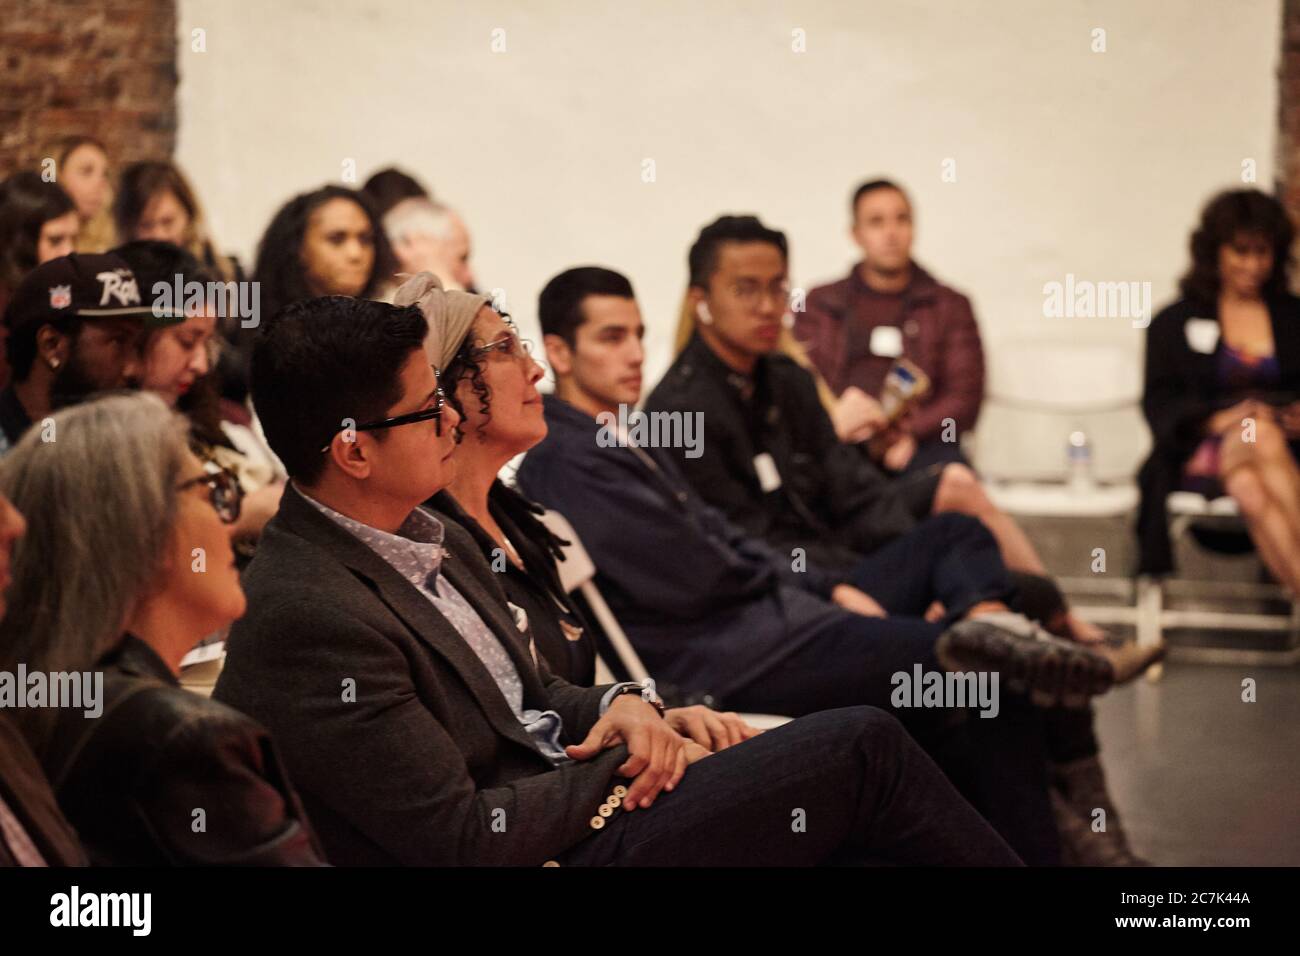 LOS ANGELES, STATI UNITI - 09 febbraio 2019: I partecipanti che guardano i relatori alla Weedweek Recharge LA, una conferenza sull'industria della cannabis. Foto Stock